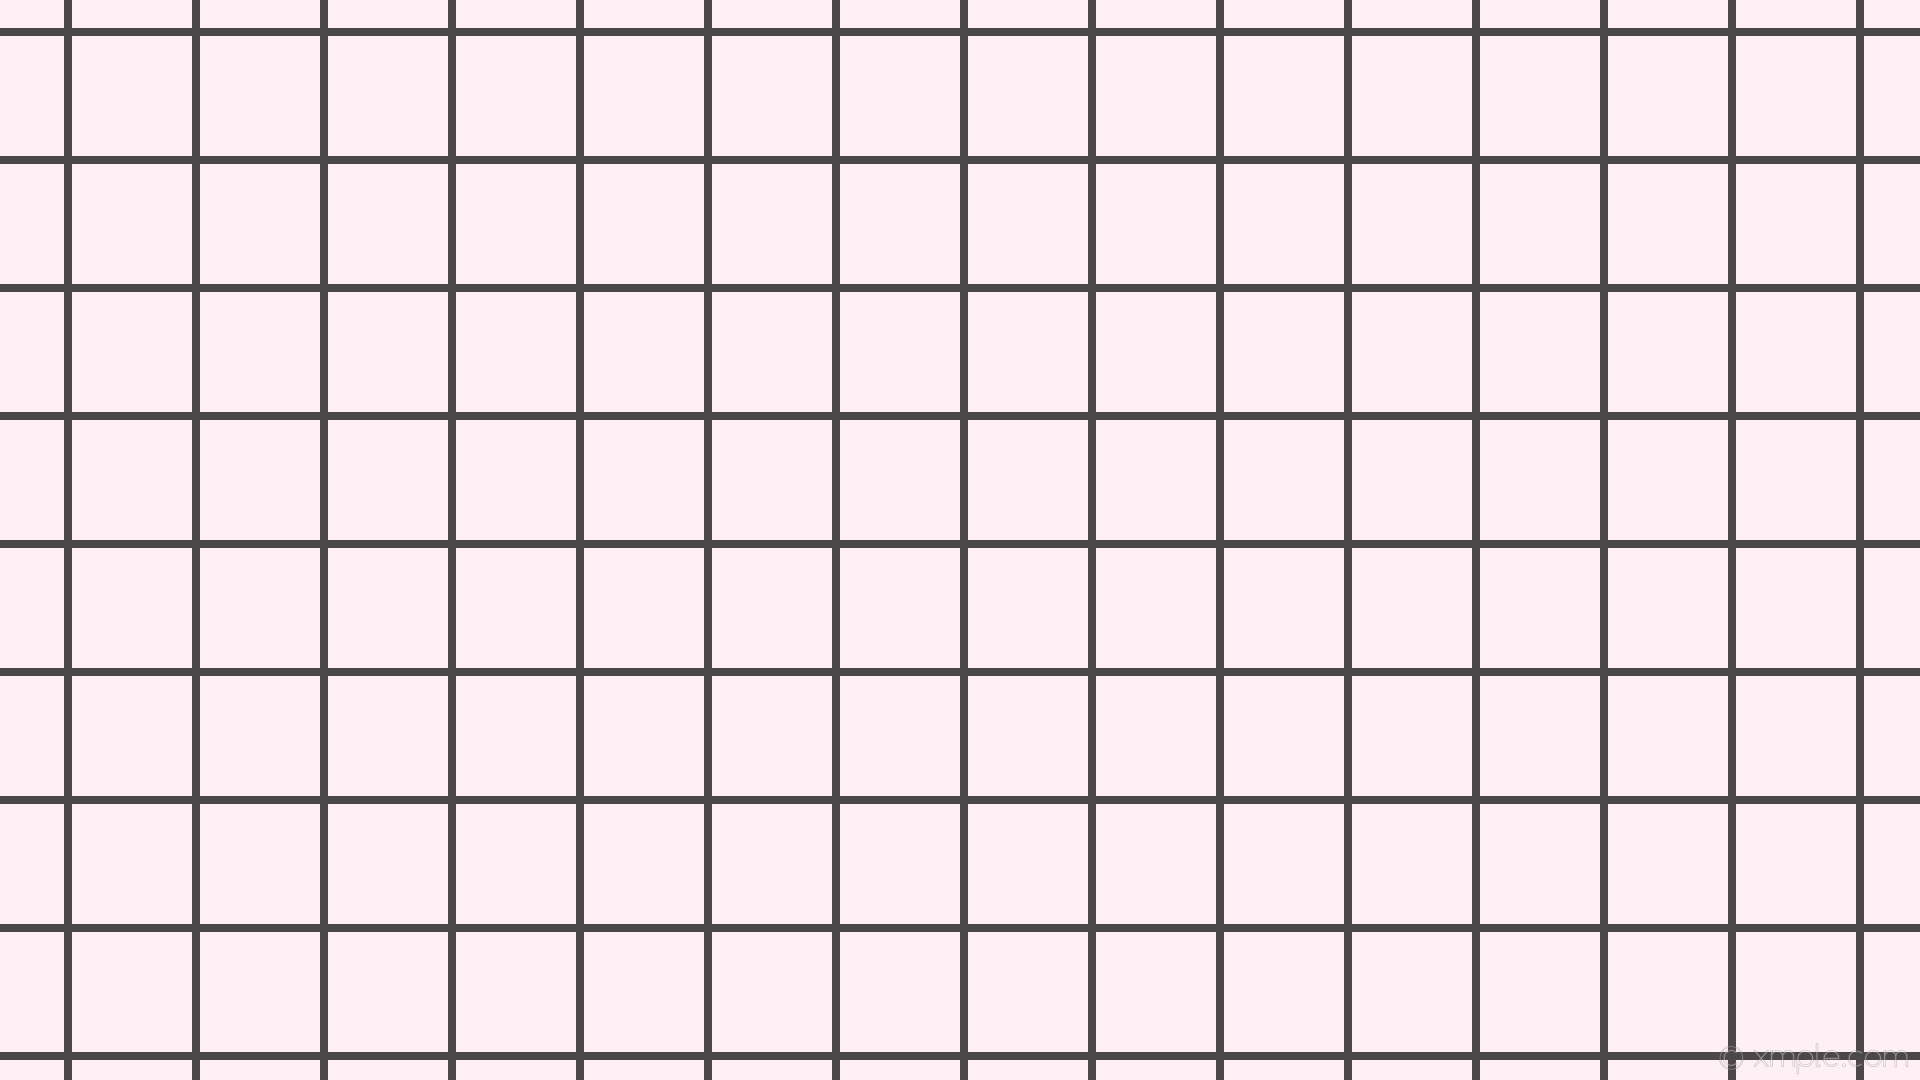 1920x1080 wallpaper white black graph paper grid lavender blush #fff0f5 #000000 0Â°  8px 128px